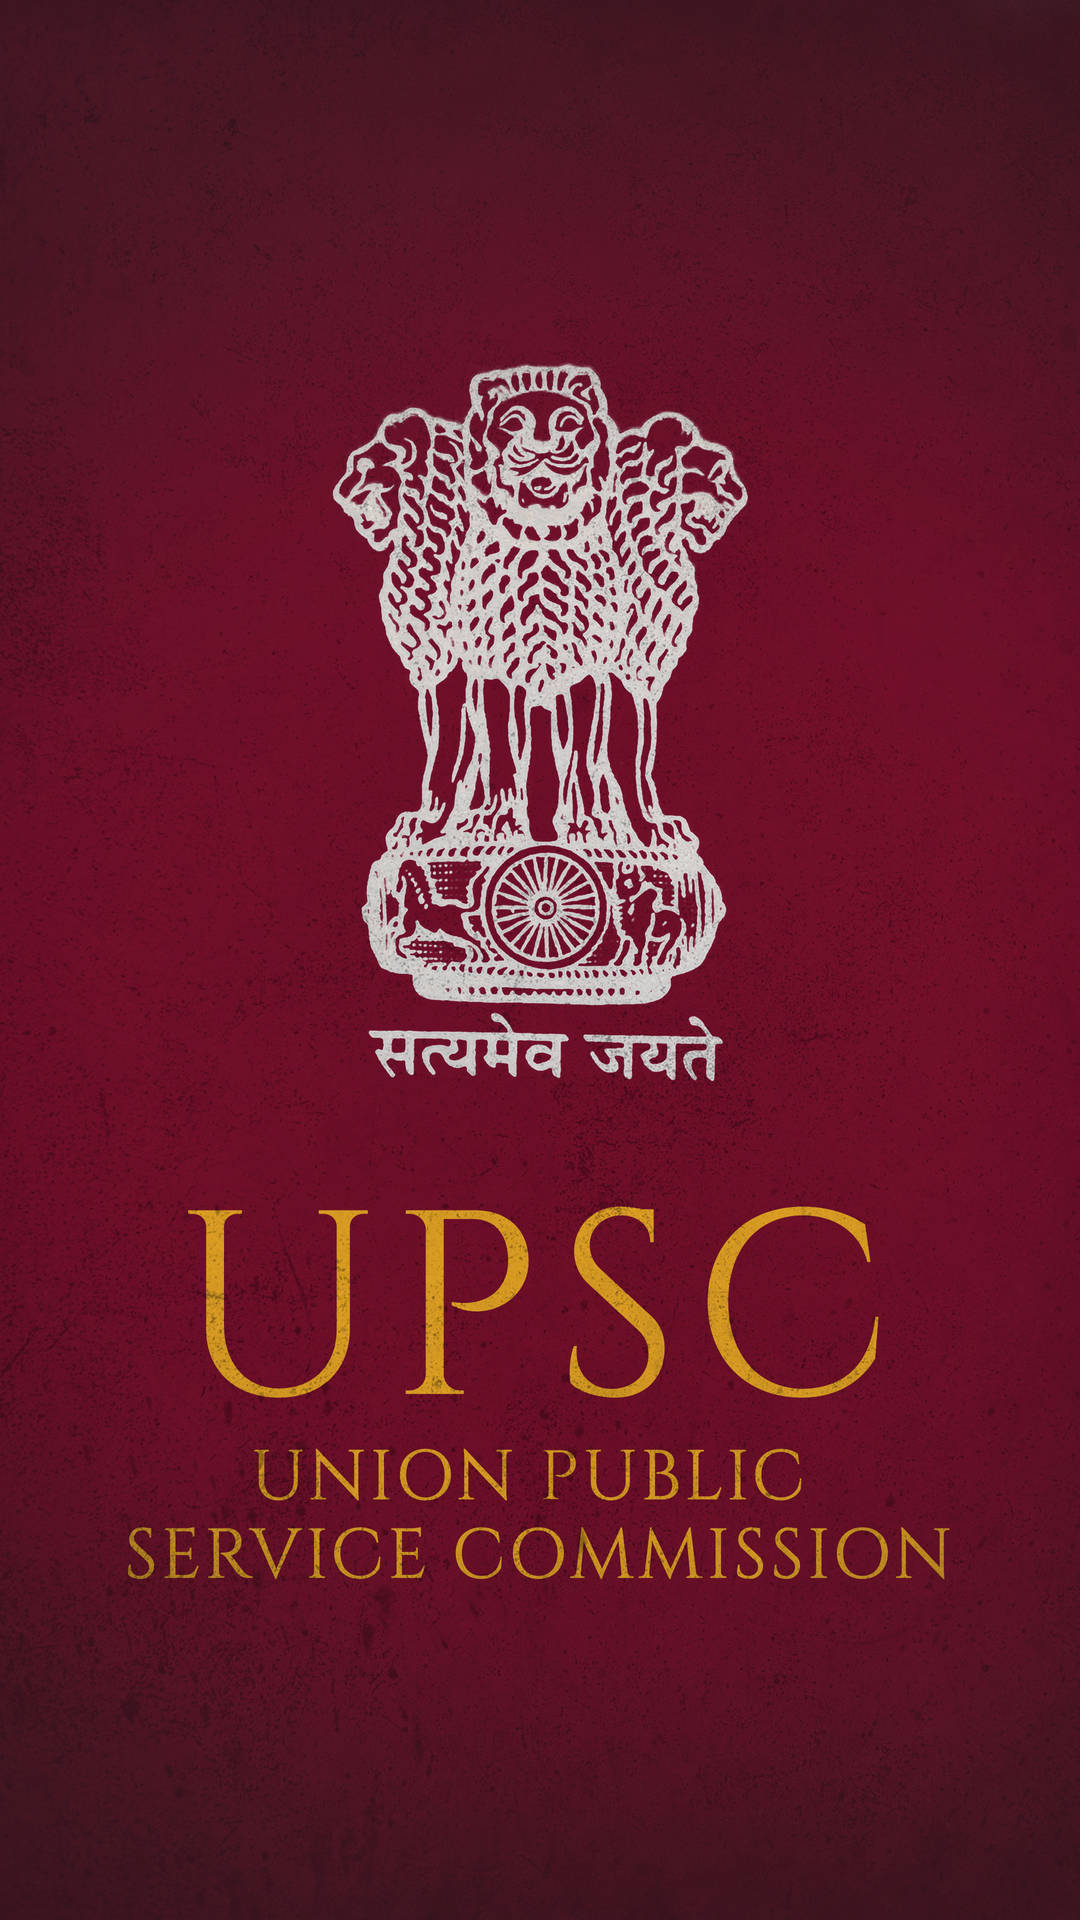 Upsc Logo On Maroon Background